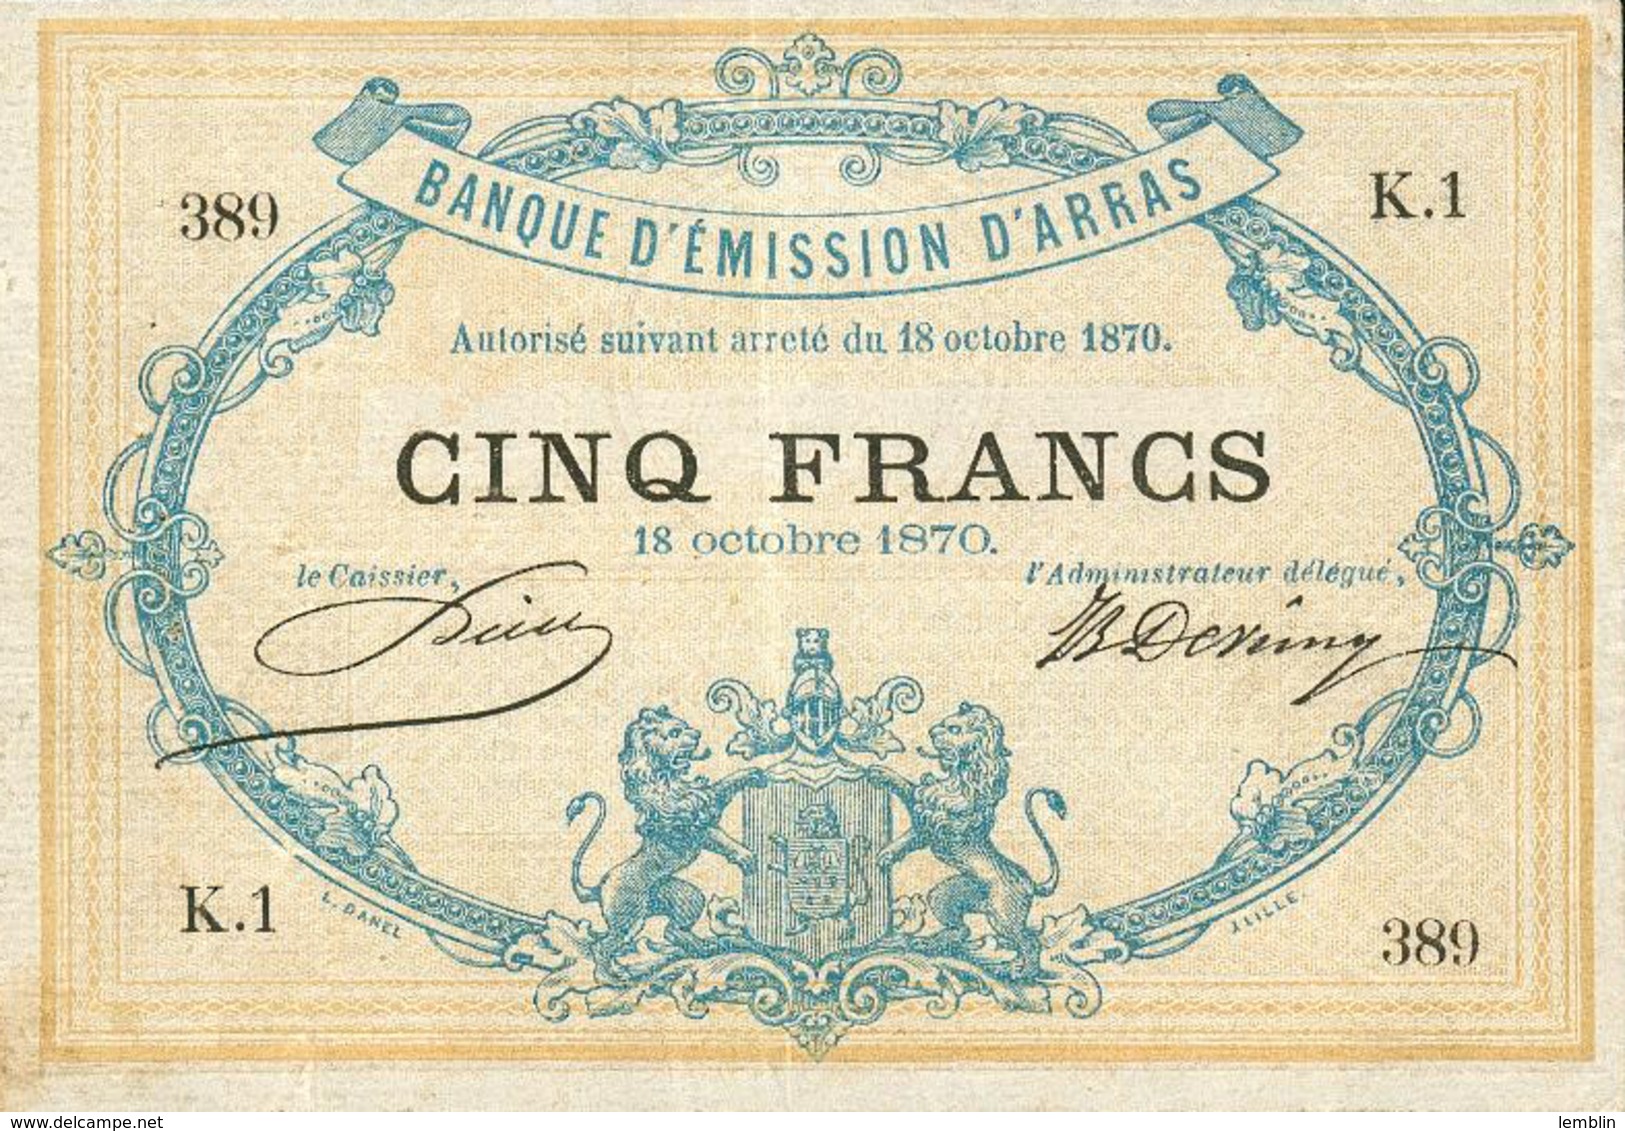 5 FRANCS BANQUE D'EMISSION D'ARRAS - GUERRE FRANCO-ALLEMANDE - 1870 - ...-1889 Anciens Francs Circulés Au XIXème